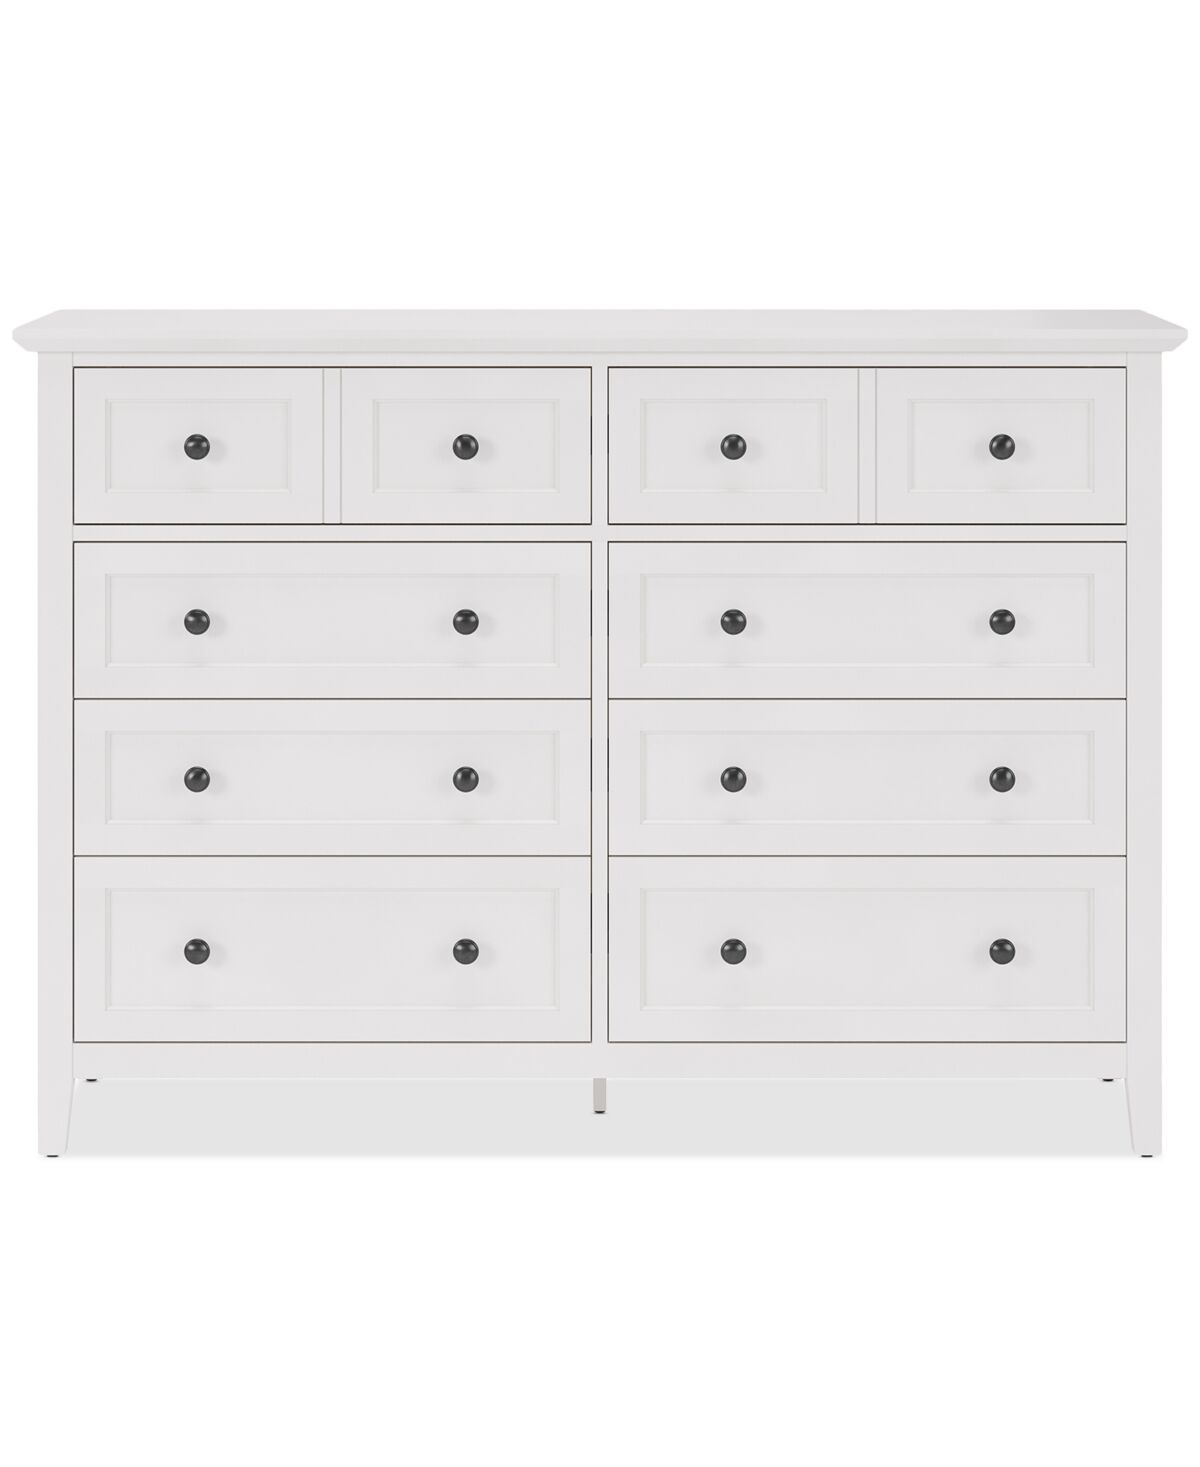 Furniture Hedworth Dresser - White